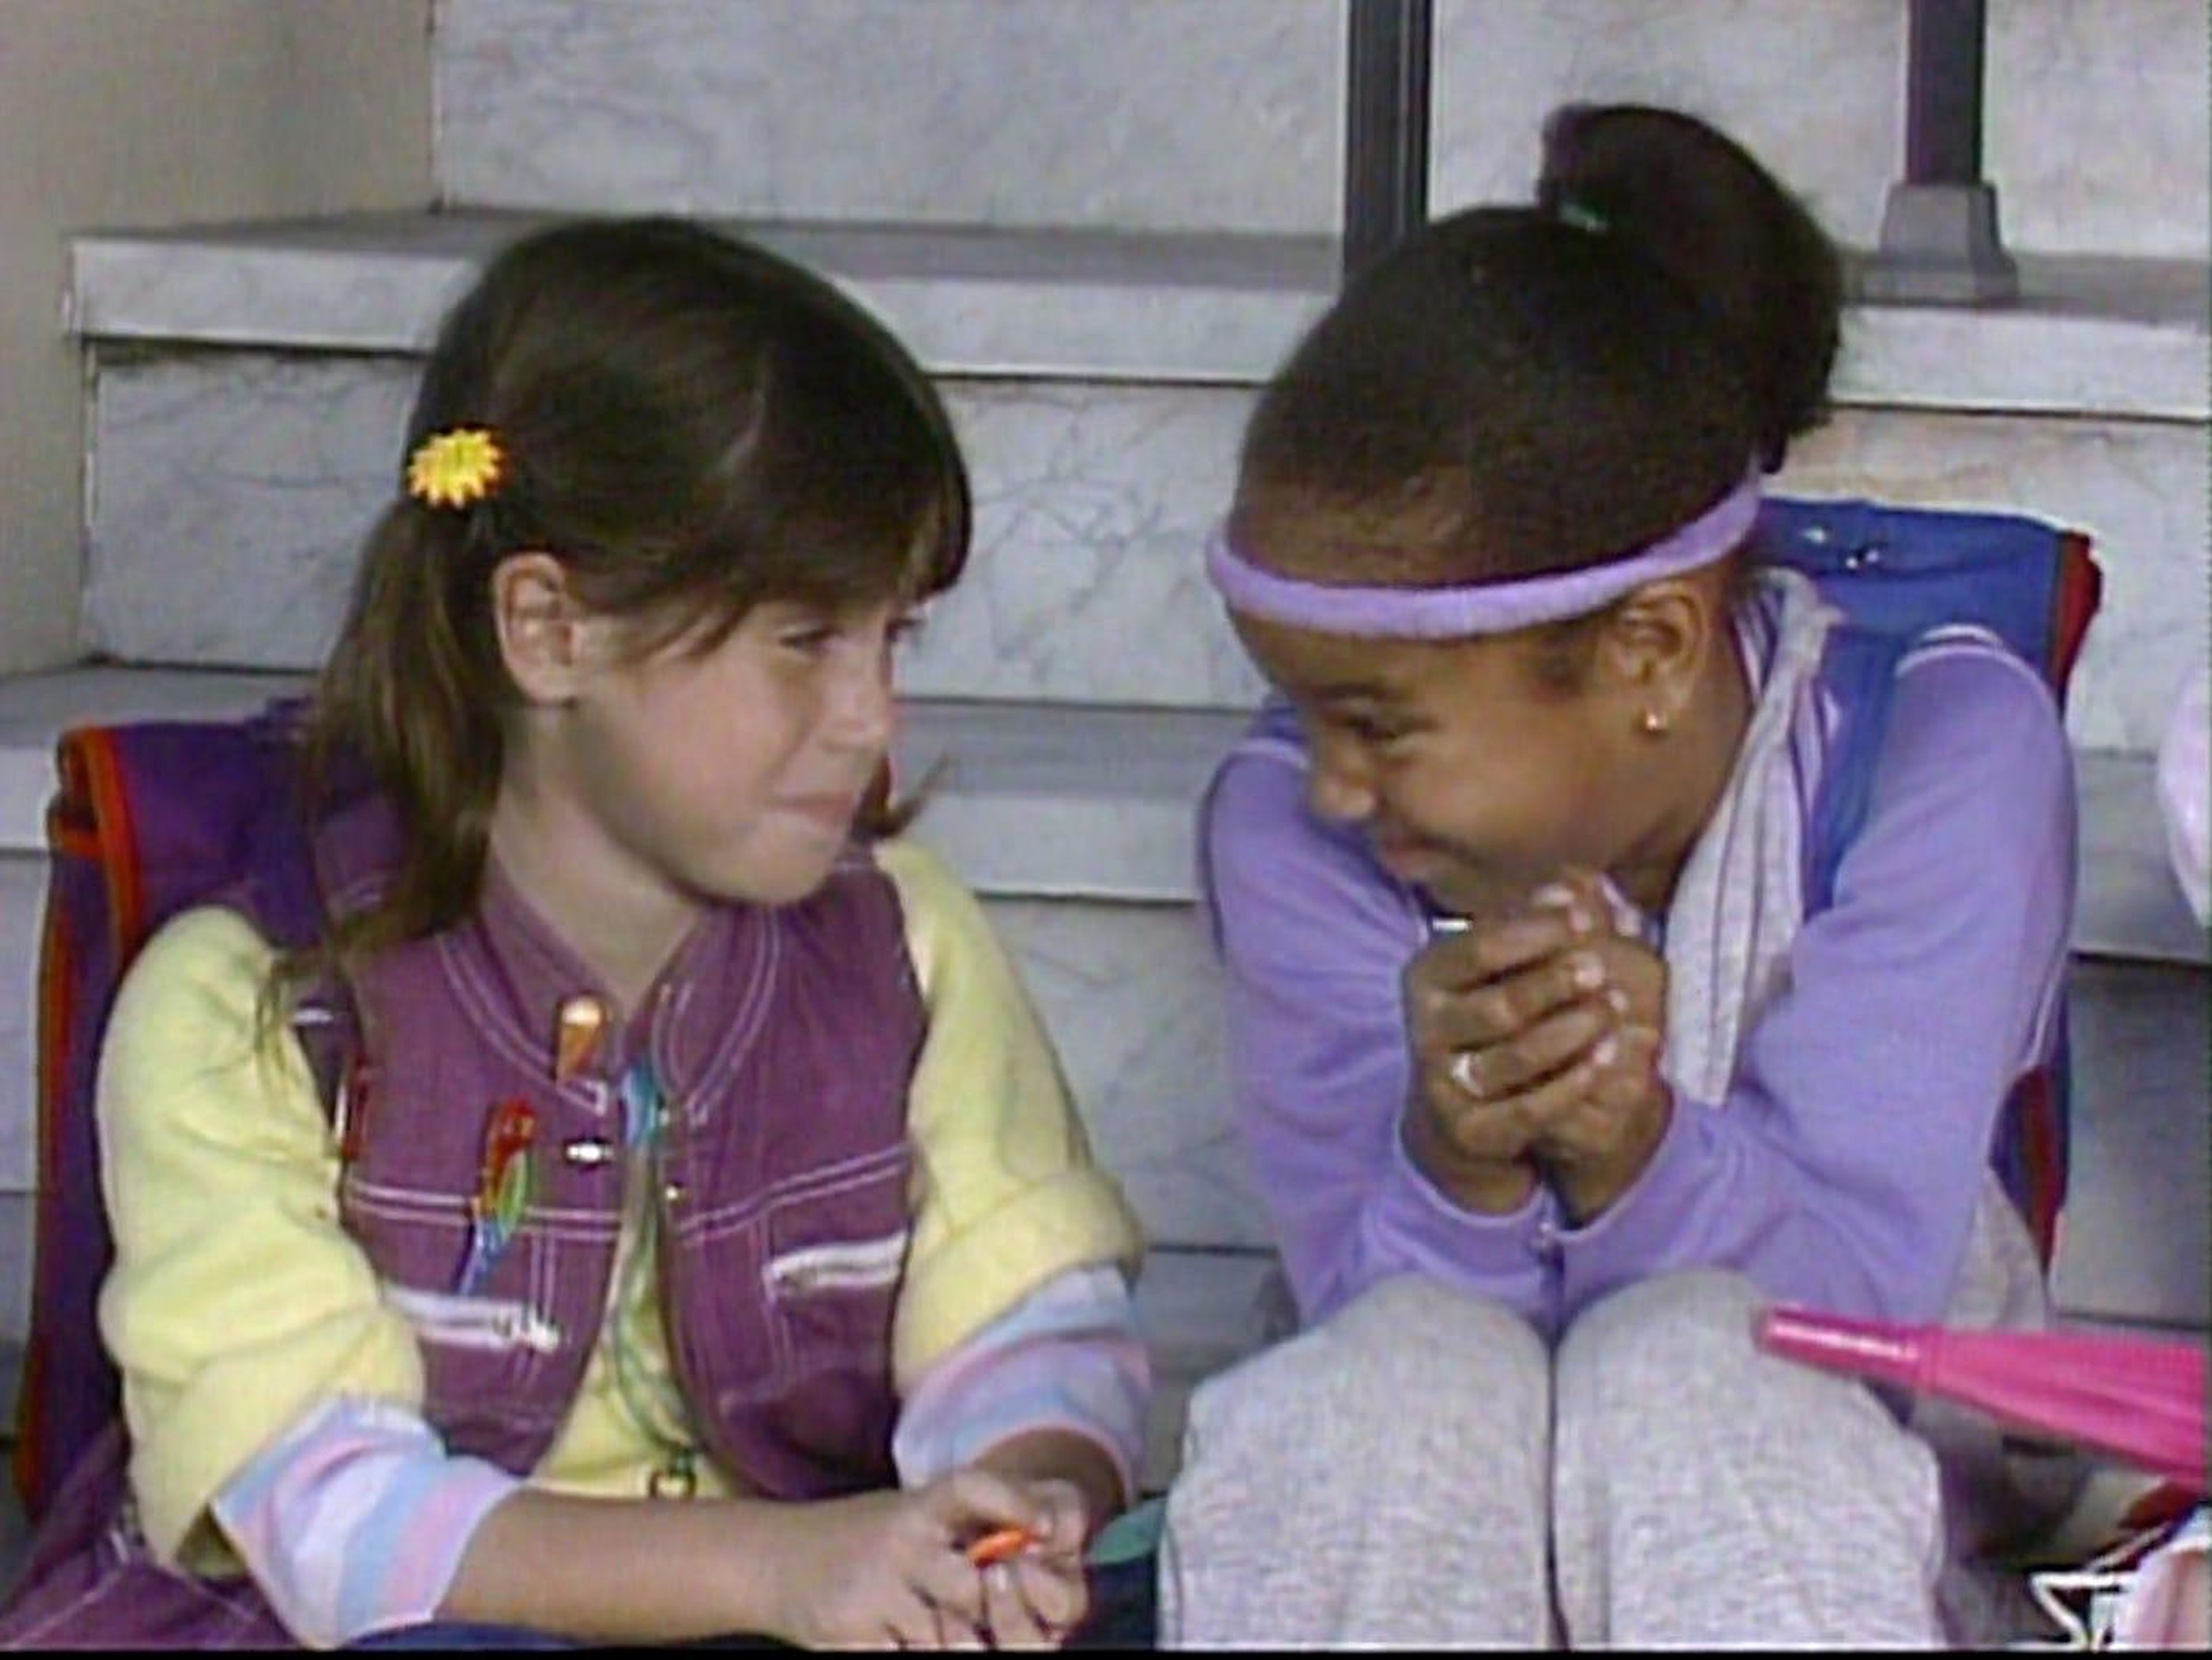 Soleil Moon Frye (izquierda) interpretó a Punky Brewster en la serie de televisión homónima.